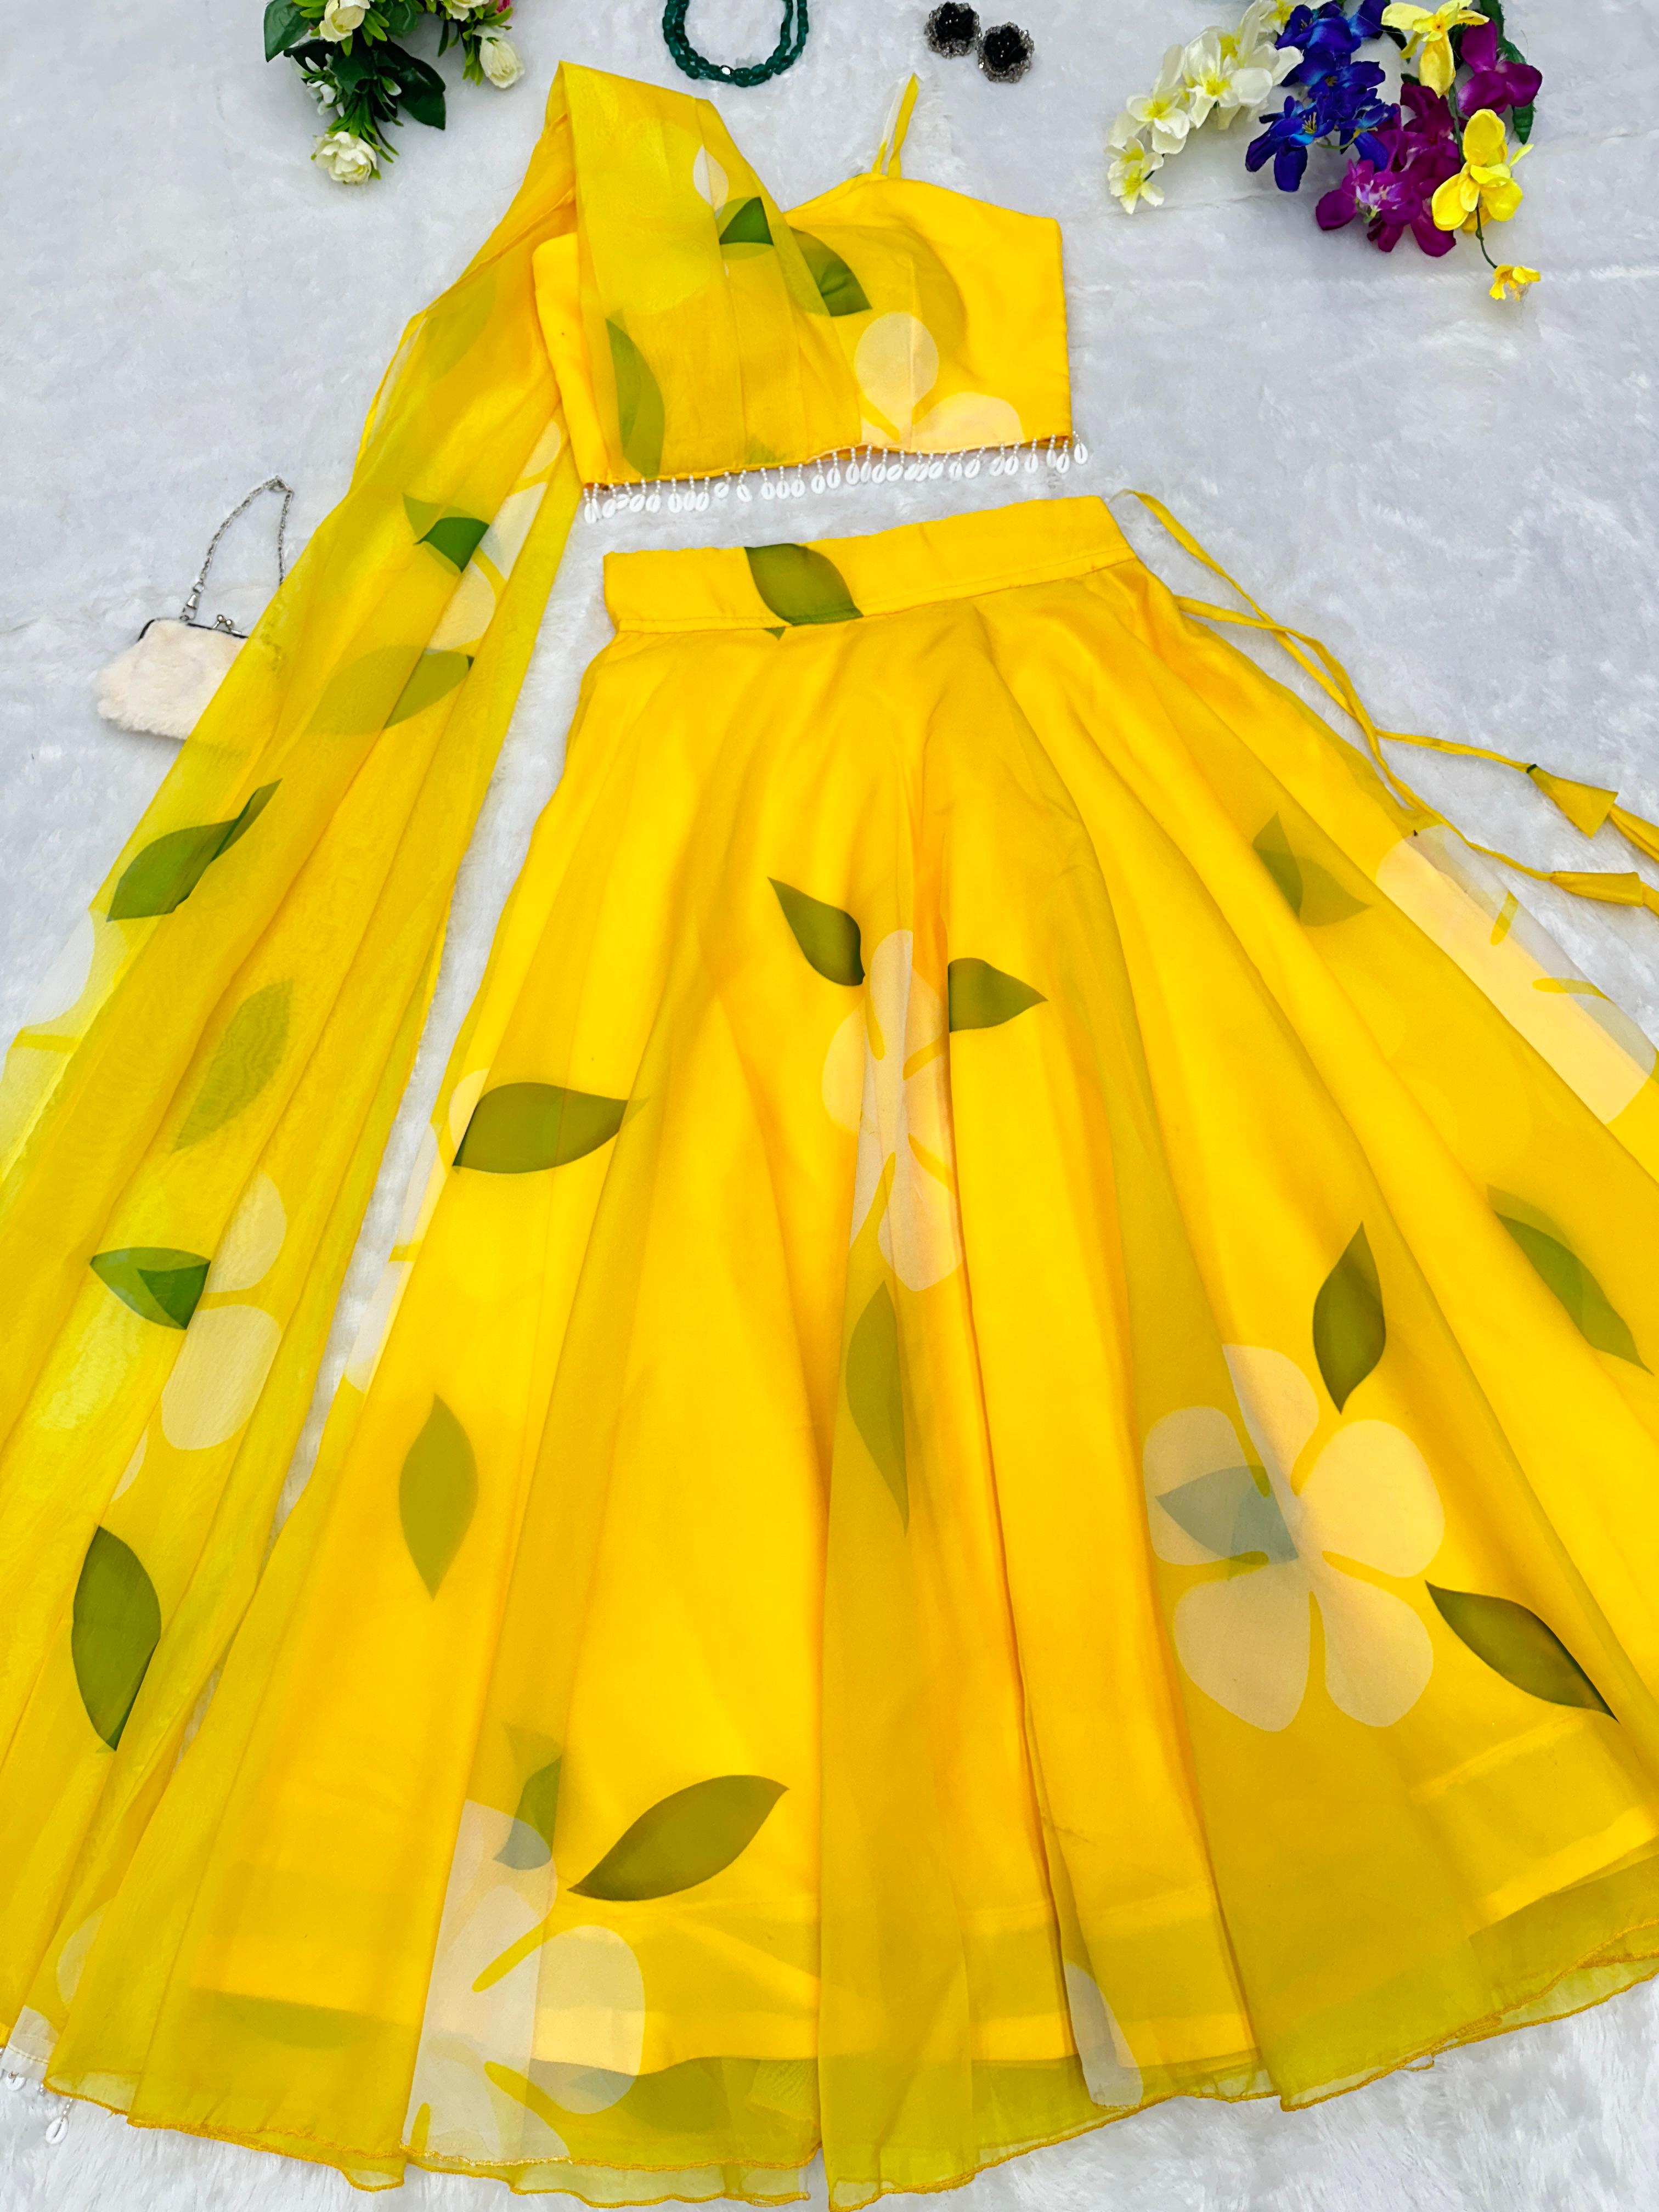 Haldi Wear Digital Printed Yellow Color Lehenga Choli